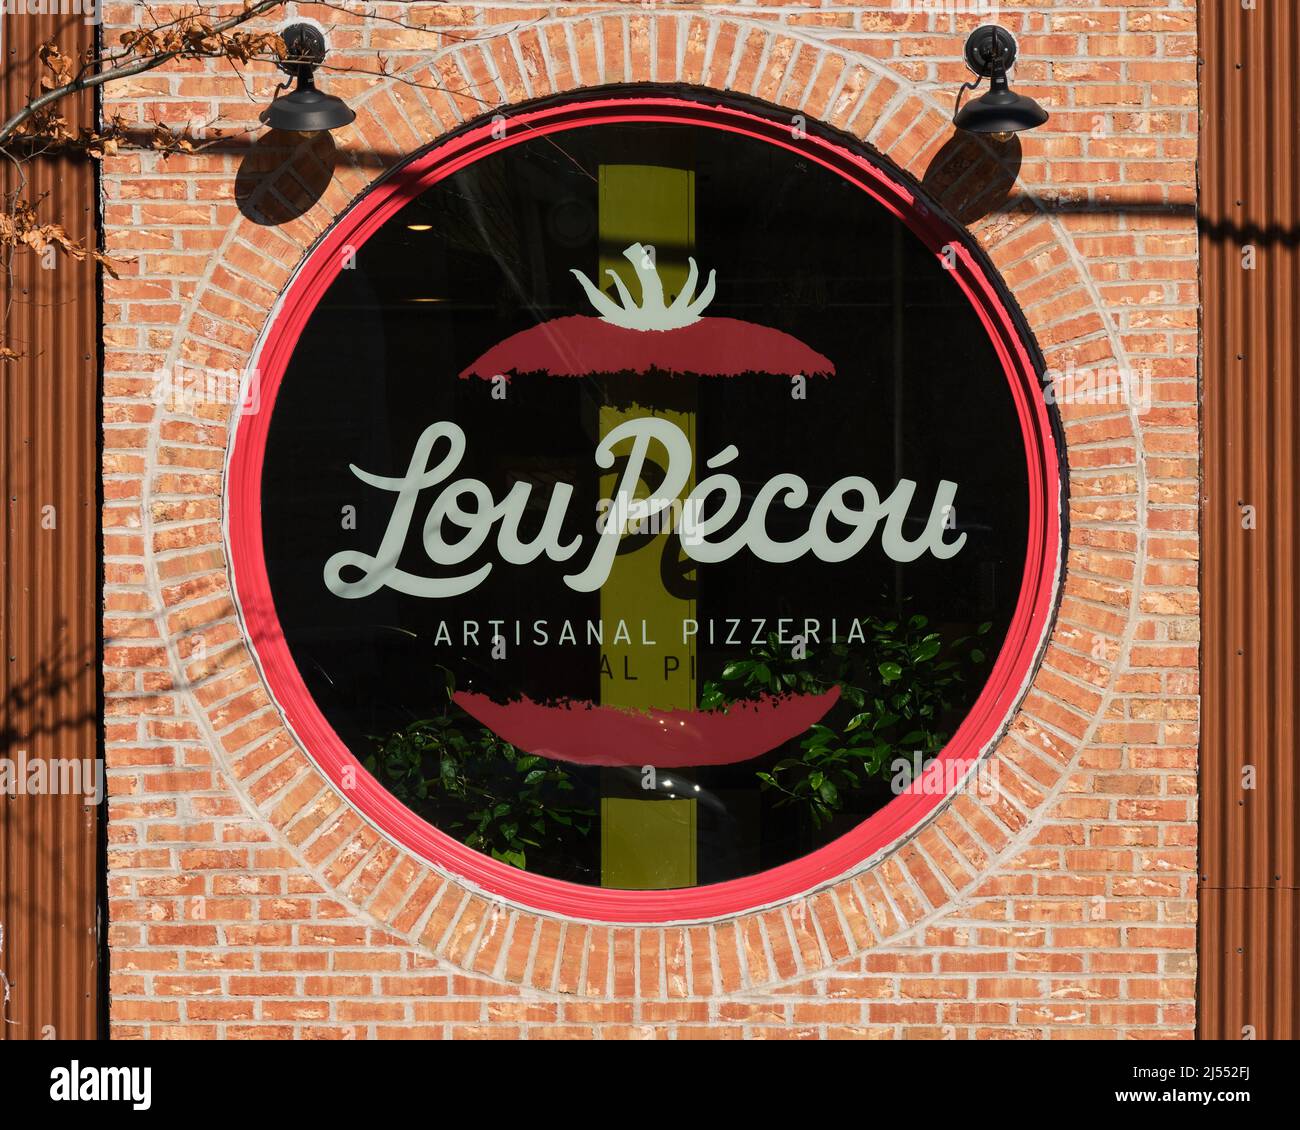 Street façade sign of Lou Pecou artisanal pizzeria in Halifax Nova Scotia Stock Photo